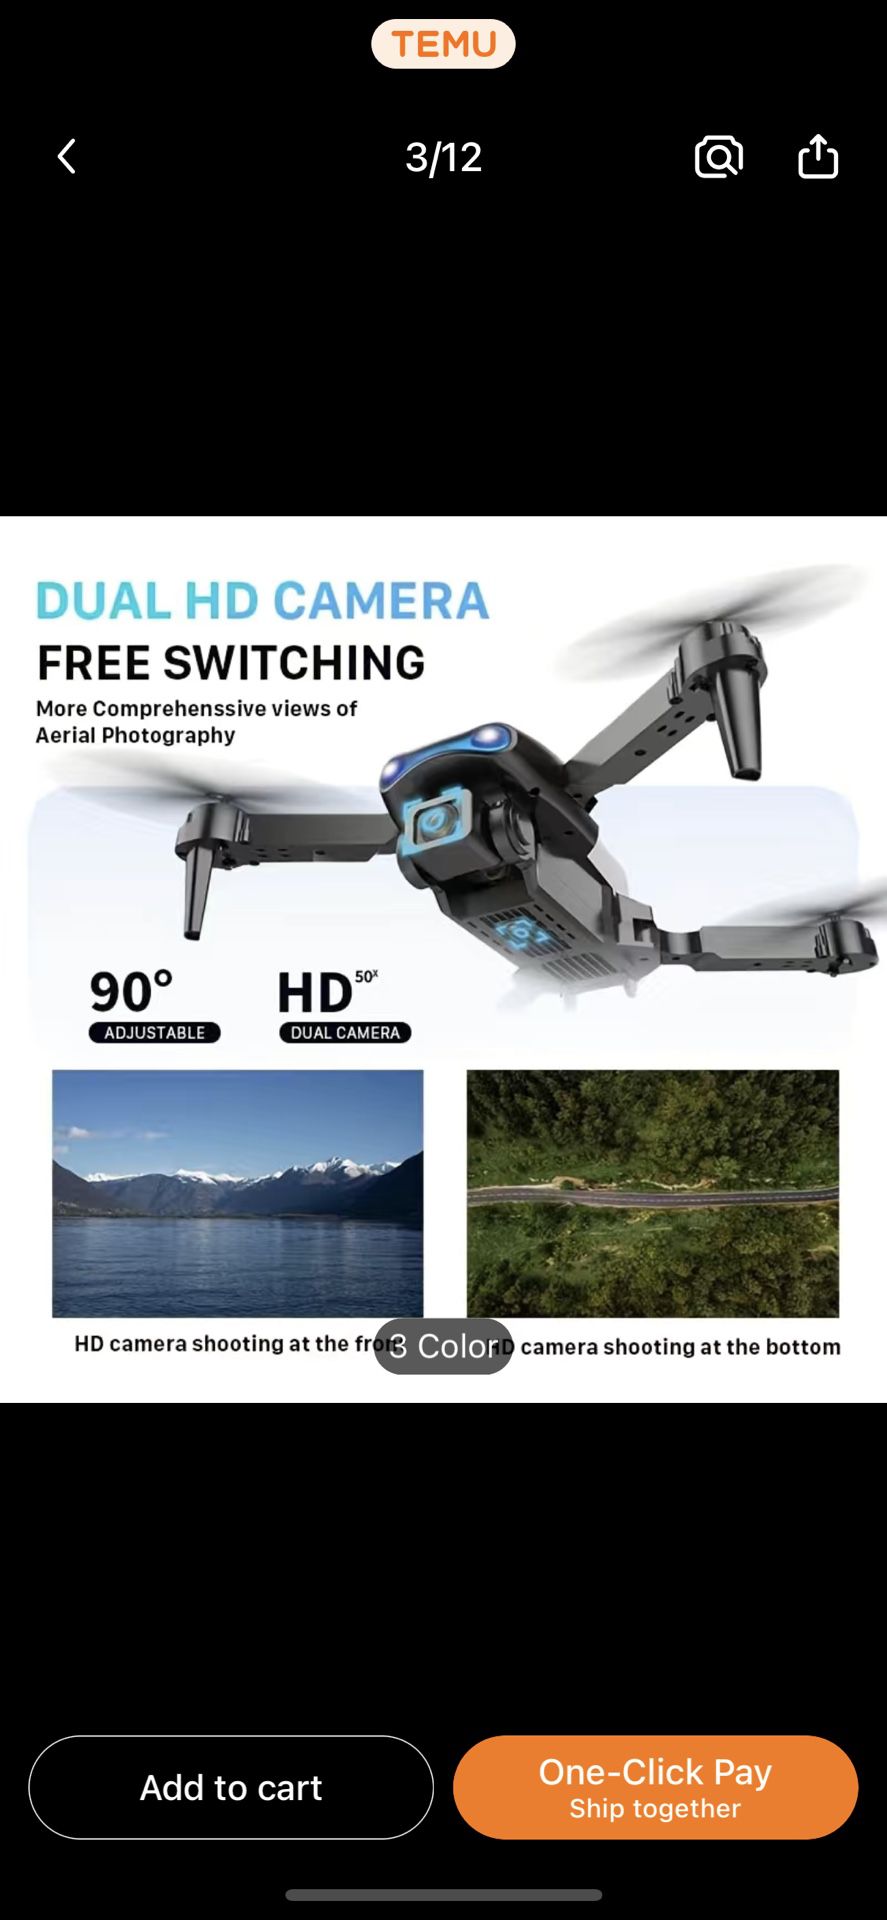 E99 Pro Drone With HD Camera